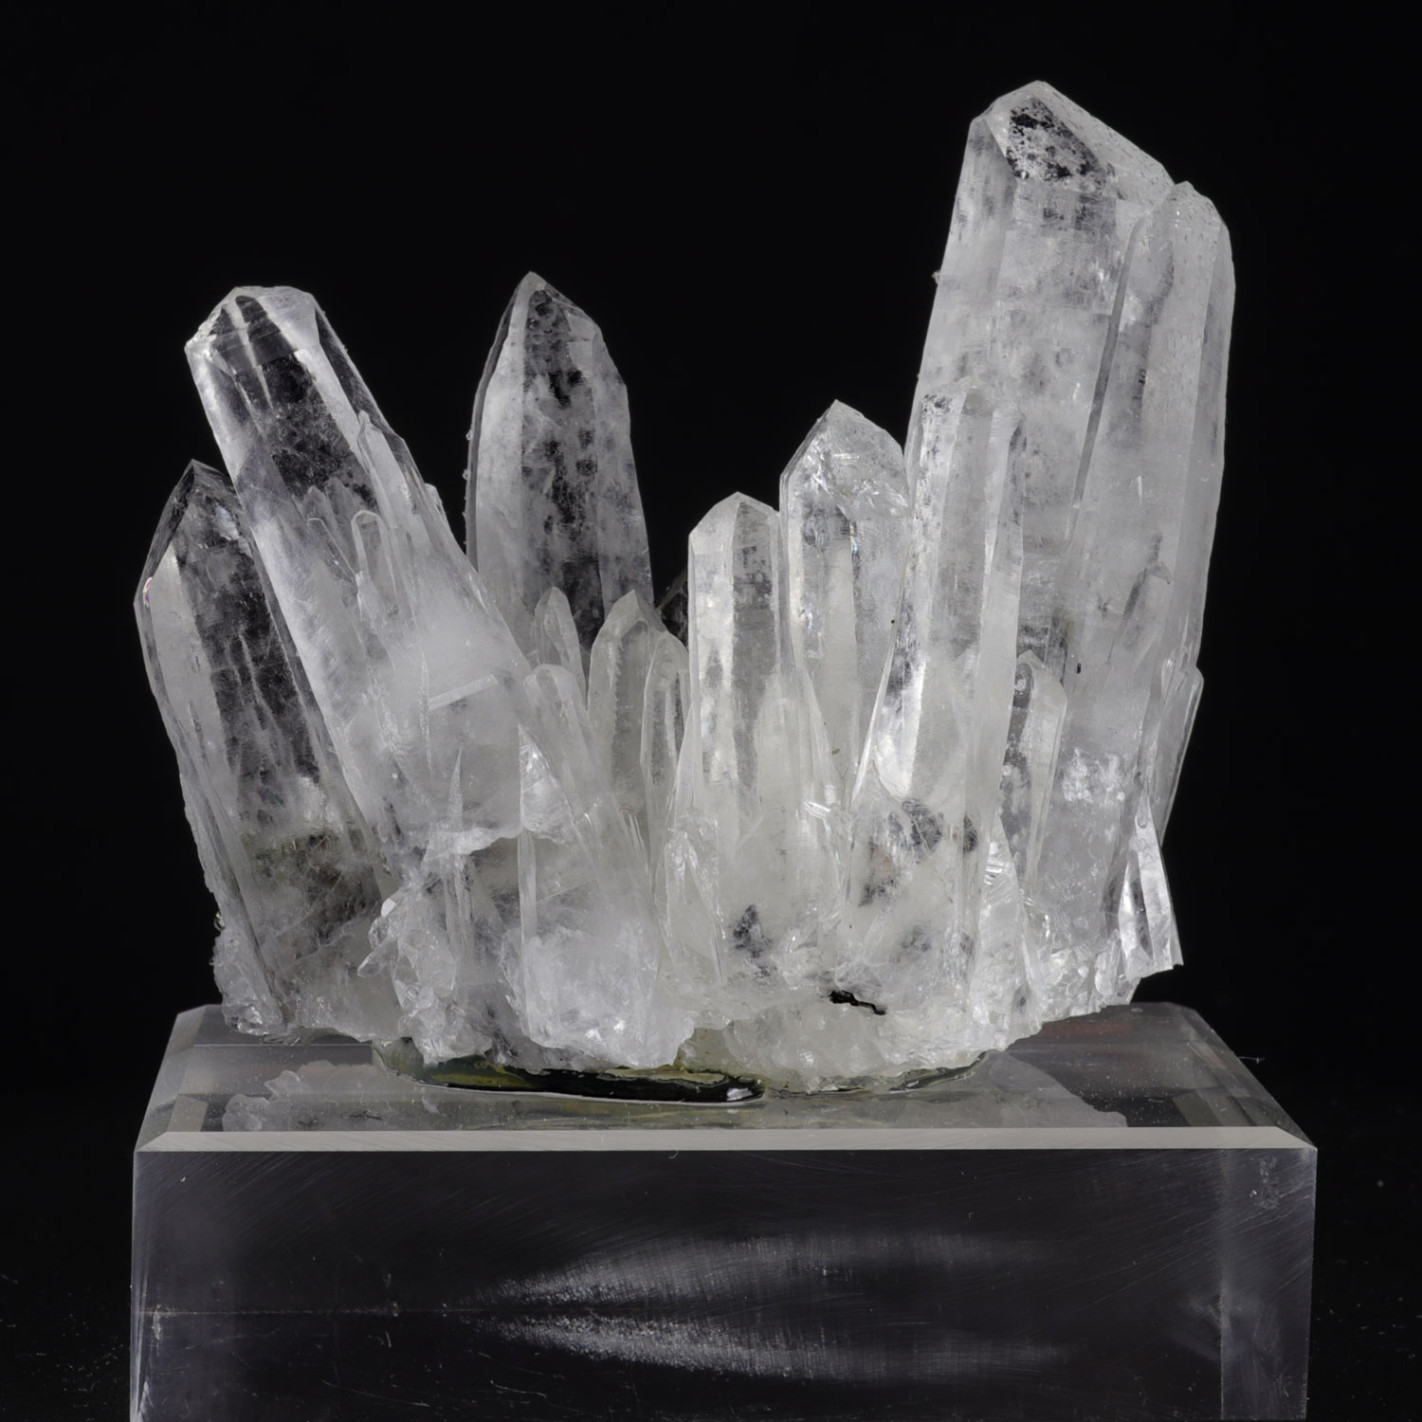 Les Minéraux : vente de minéraux français et de cristaux du monde